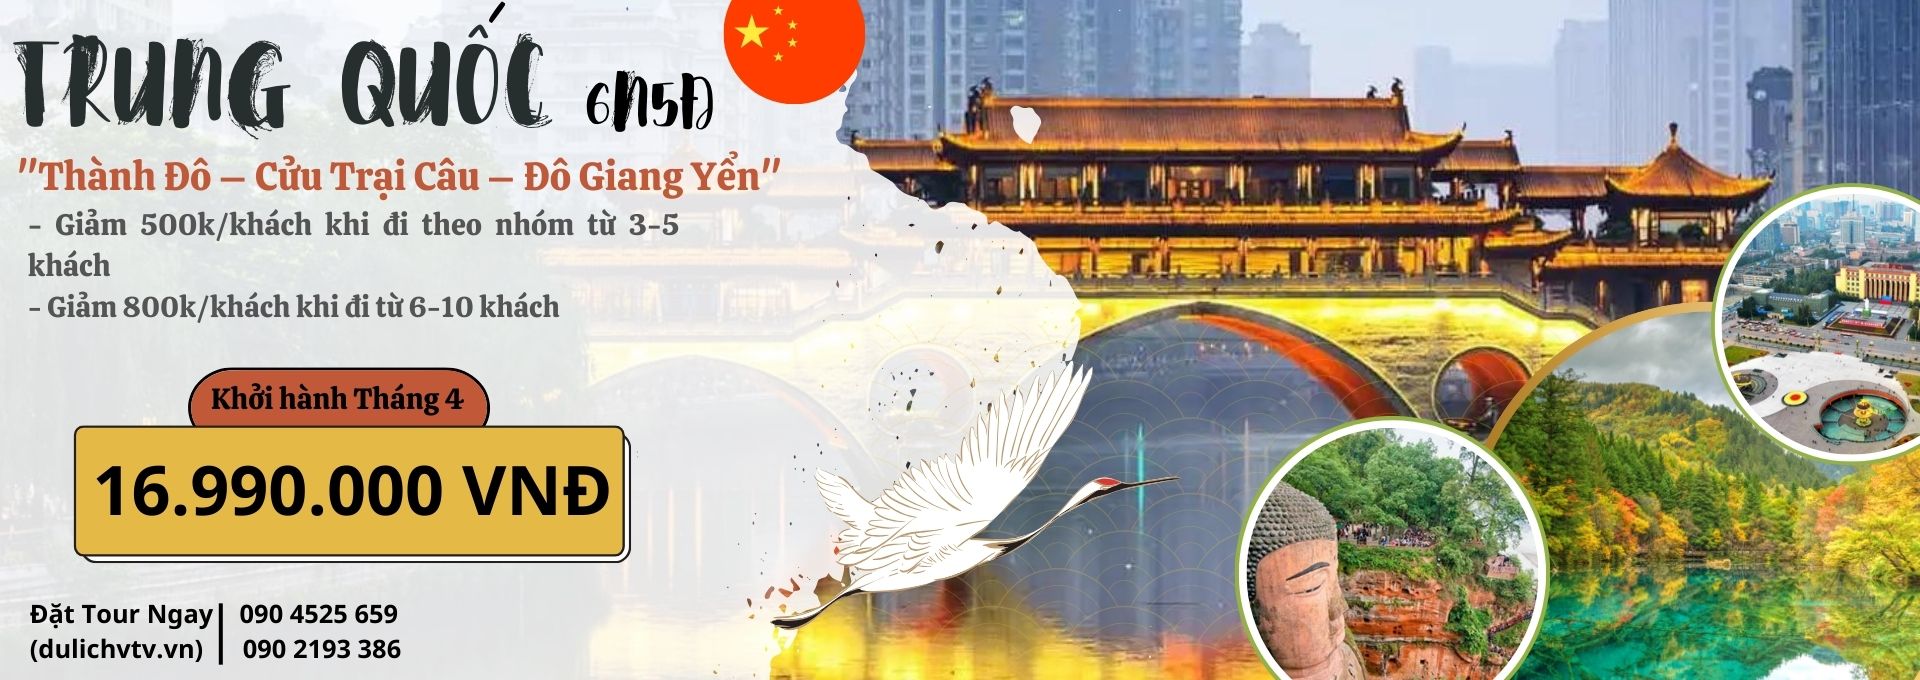 Du lịch Trung Quốc Cửu Trại Câu 6 Ngày 5 Đêm giá rẻ